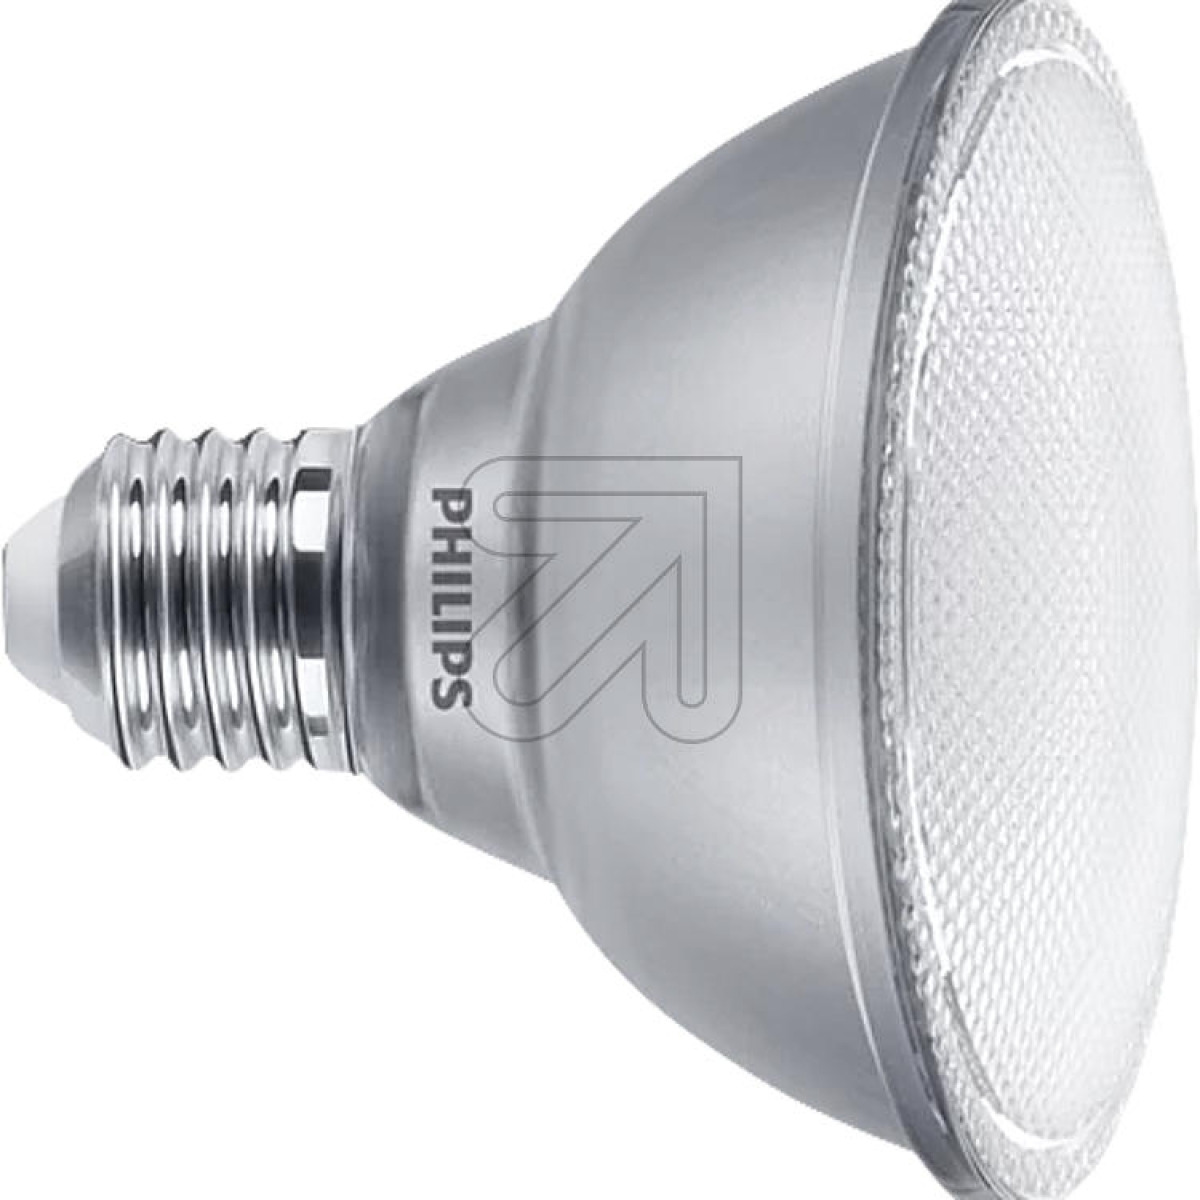 PhilipsMAS LEDspot VLE D 9.5-75W 930 PAR30S 25D 44322800Article-No: 534955